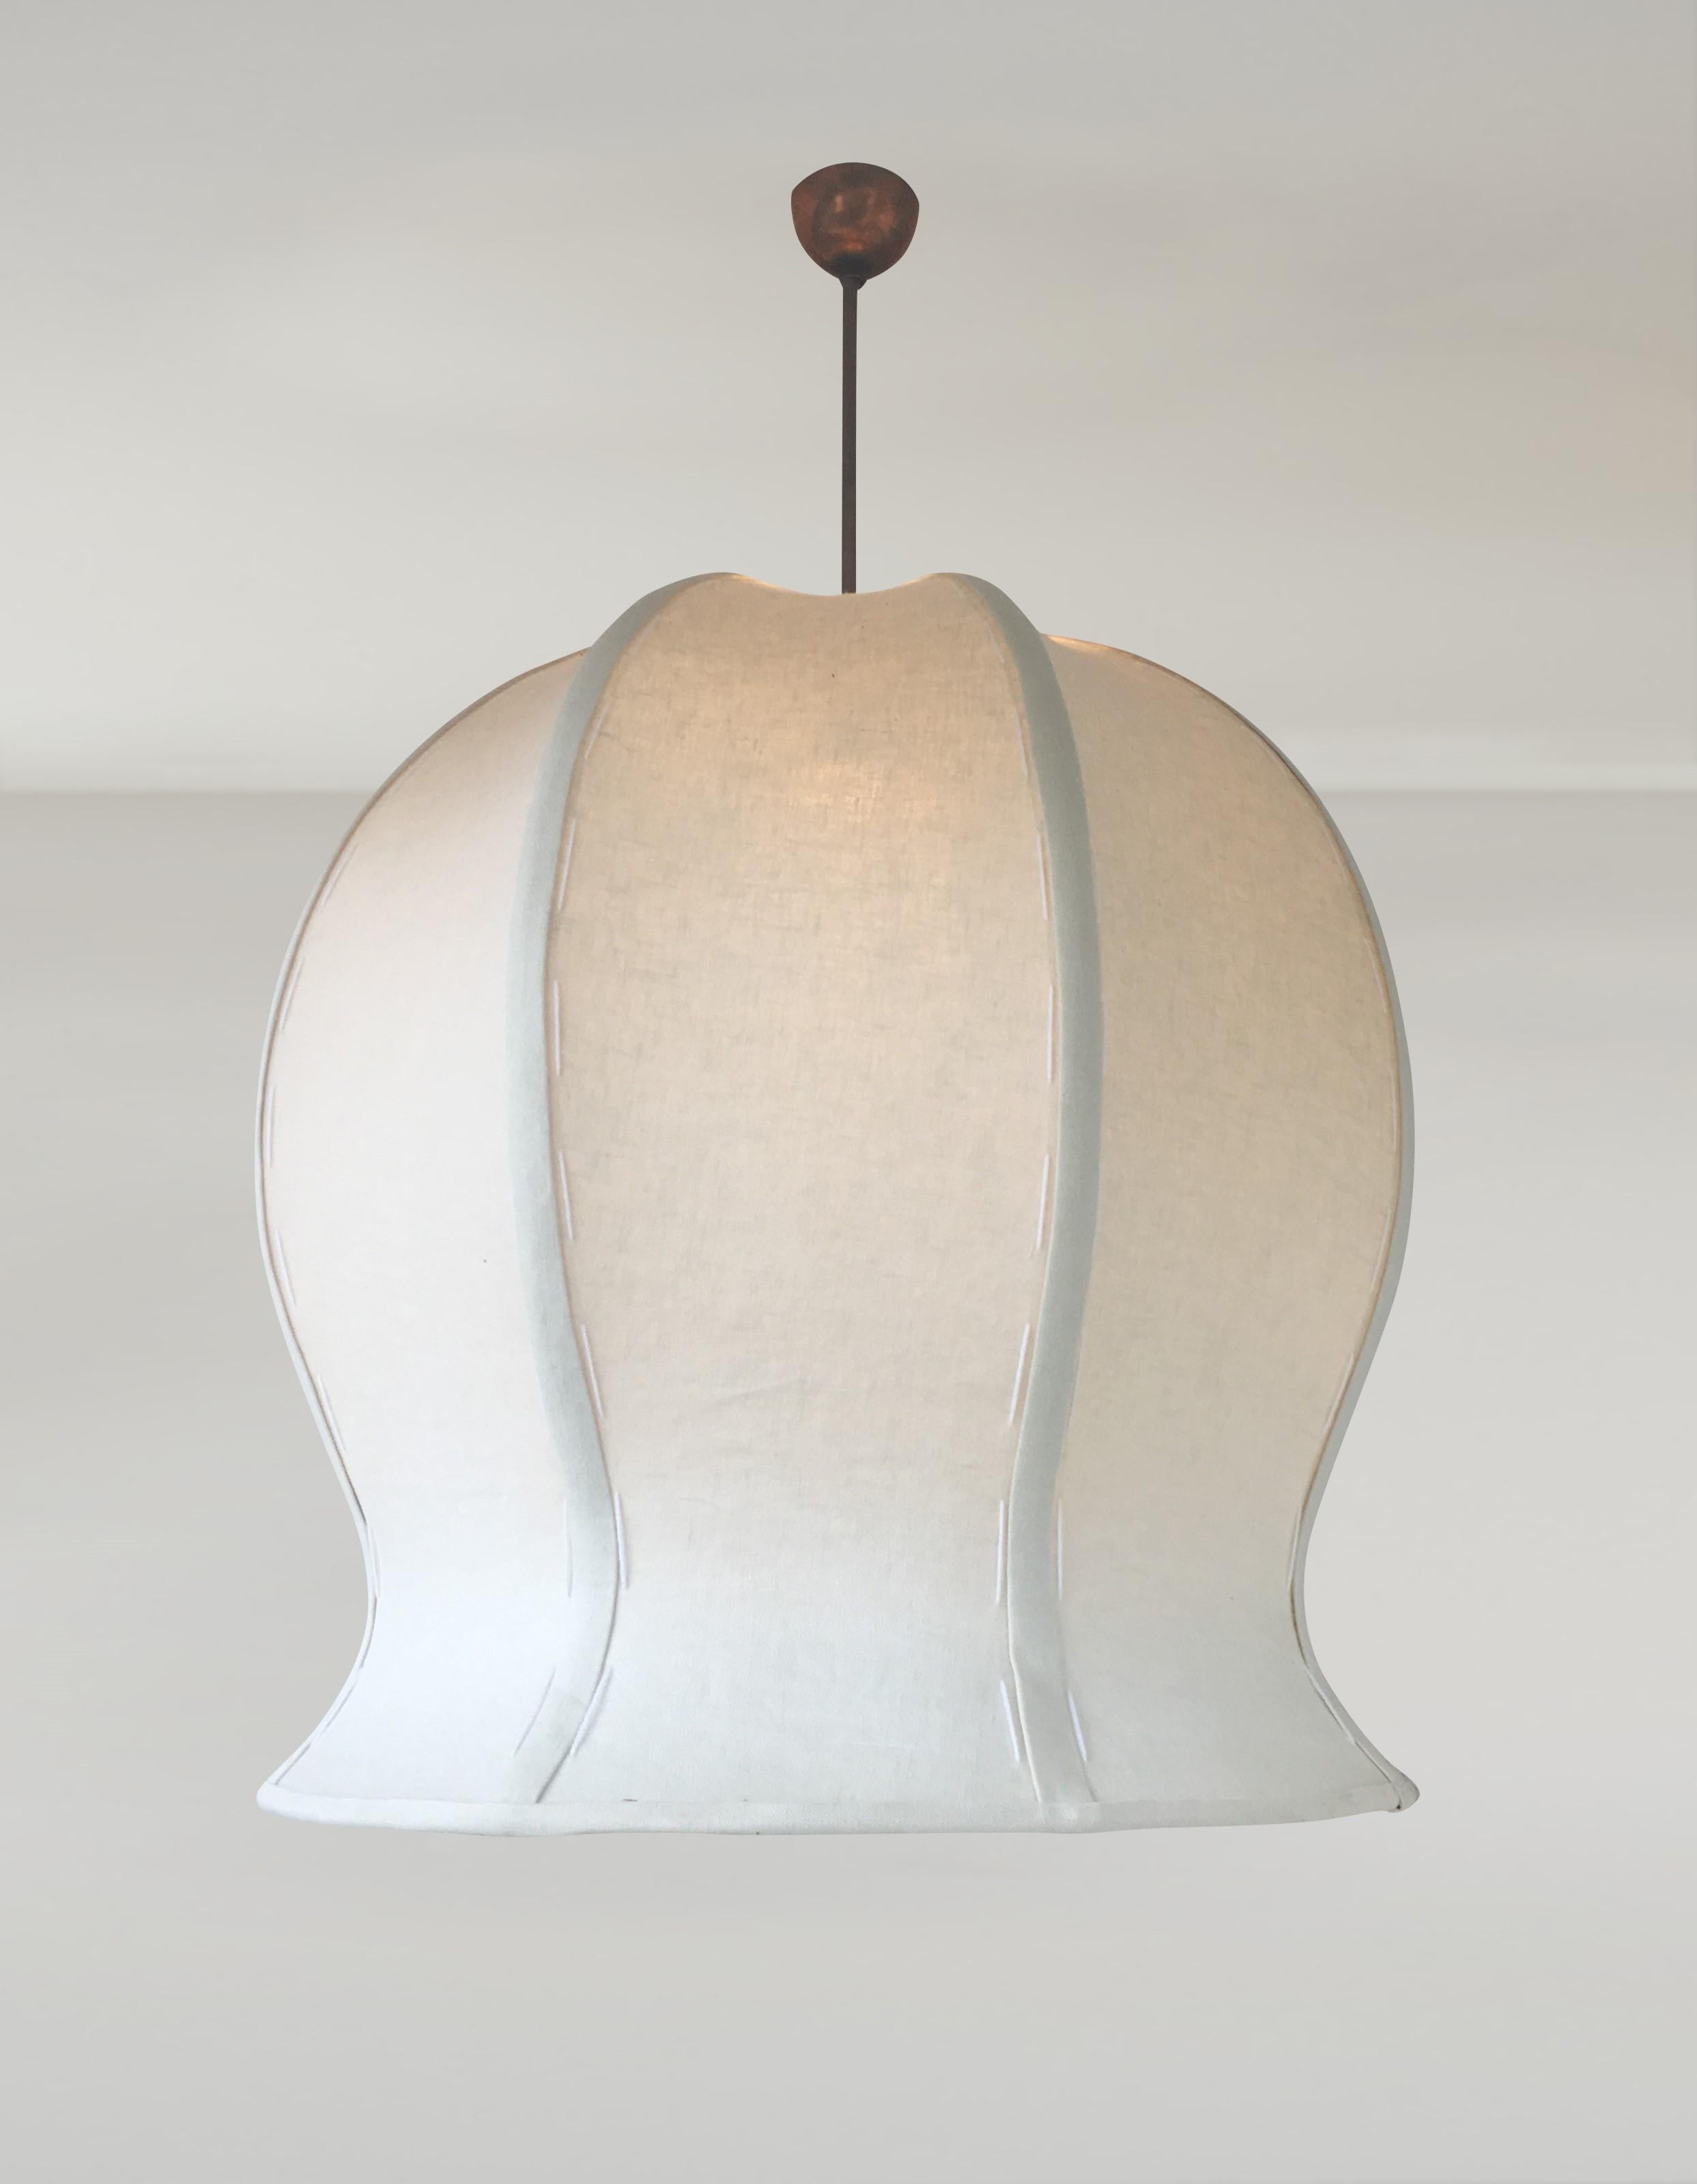 Le pendentif artisanal Tulip 520 est fabriqué sur mesure.  Inspirée par la Nature, cette sculpture originale, signature cousue main.  La lampe suspendue en lin italien est un exemple raffiné du design moderne organique du 21e siècle. 
La suspension